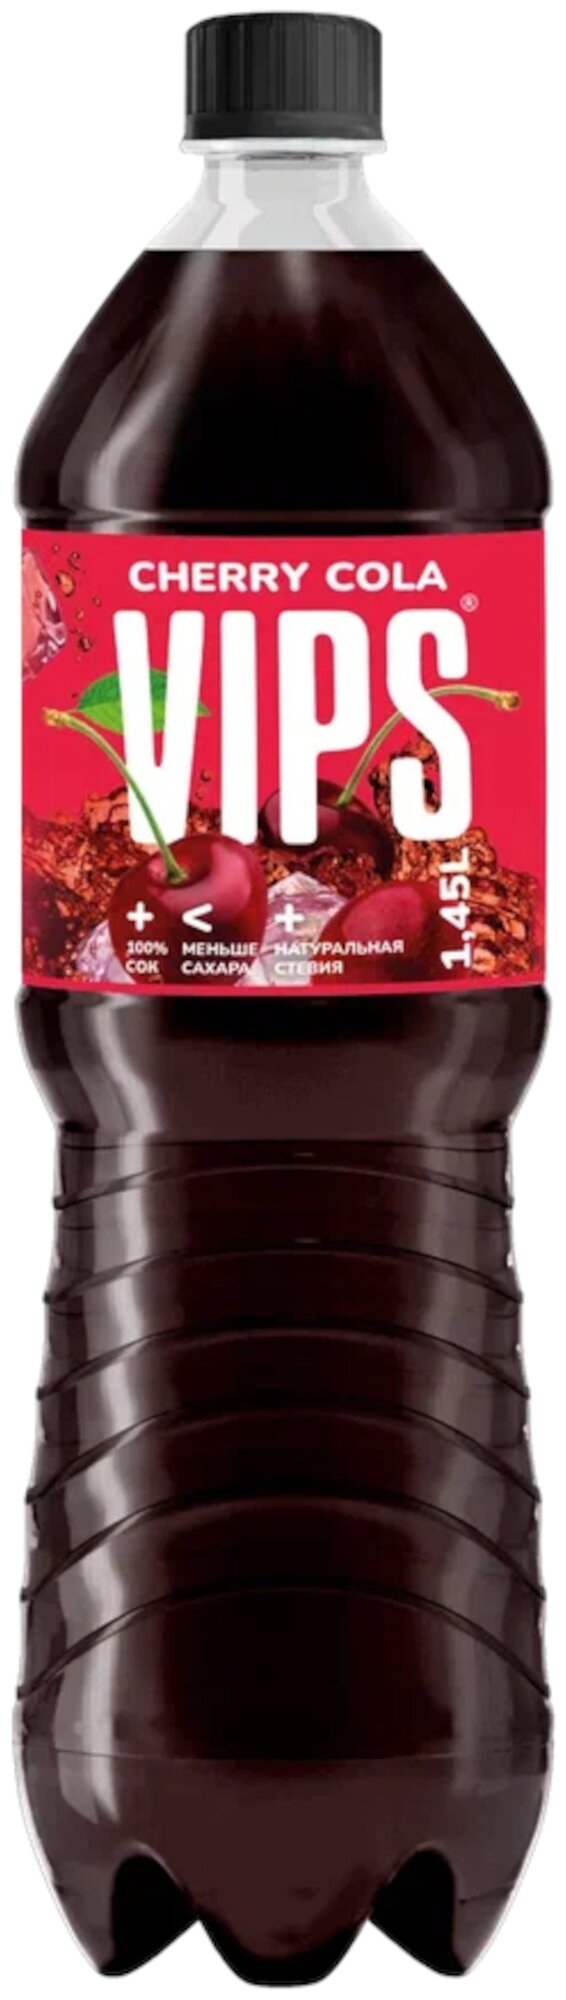 Напиток газированный VIPS 1,45л Кола вишневый рай